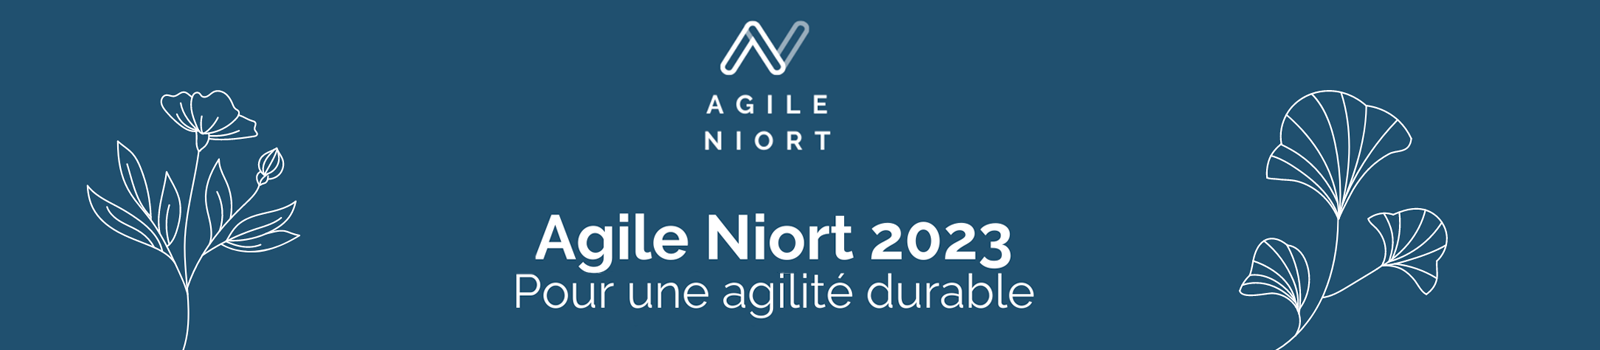 Agile NIORT 2023